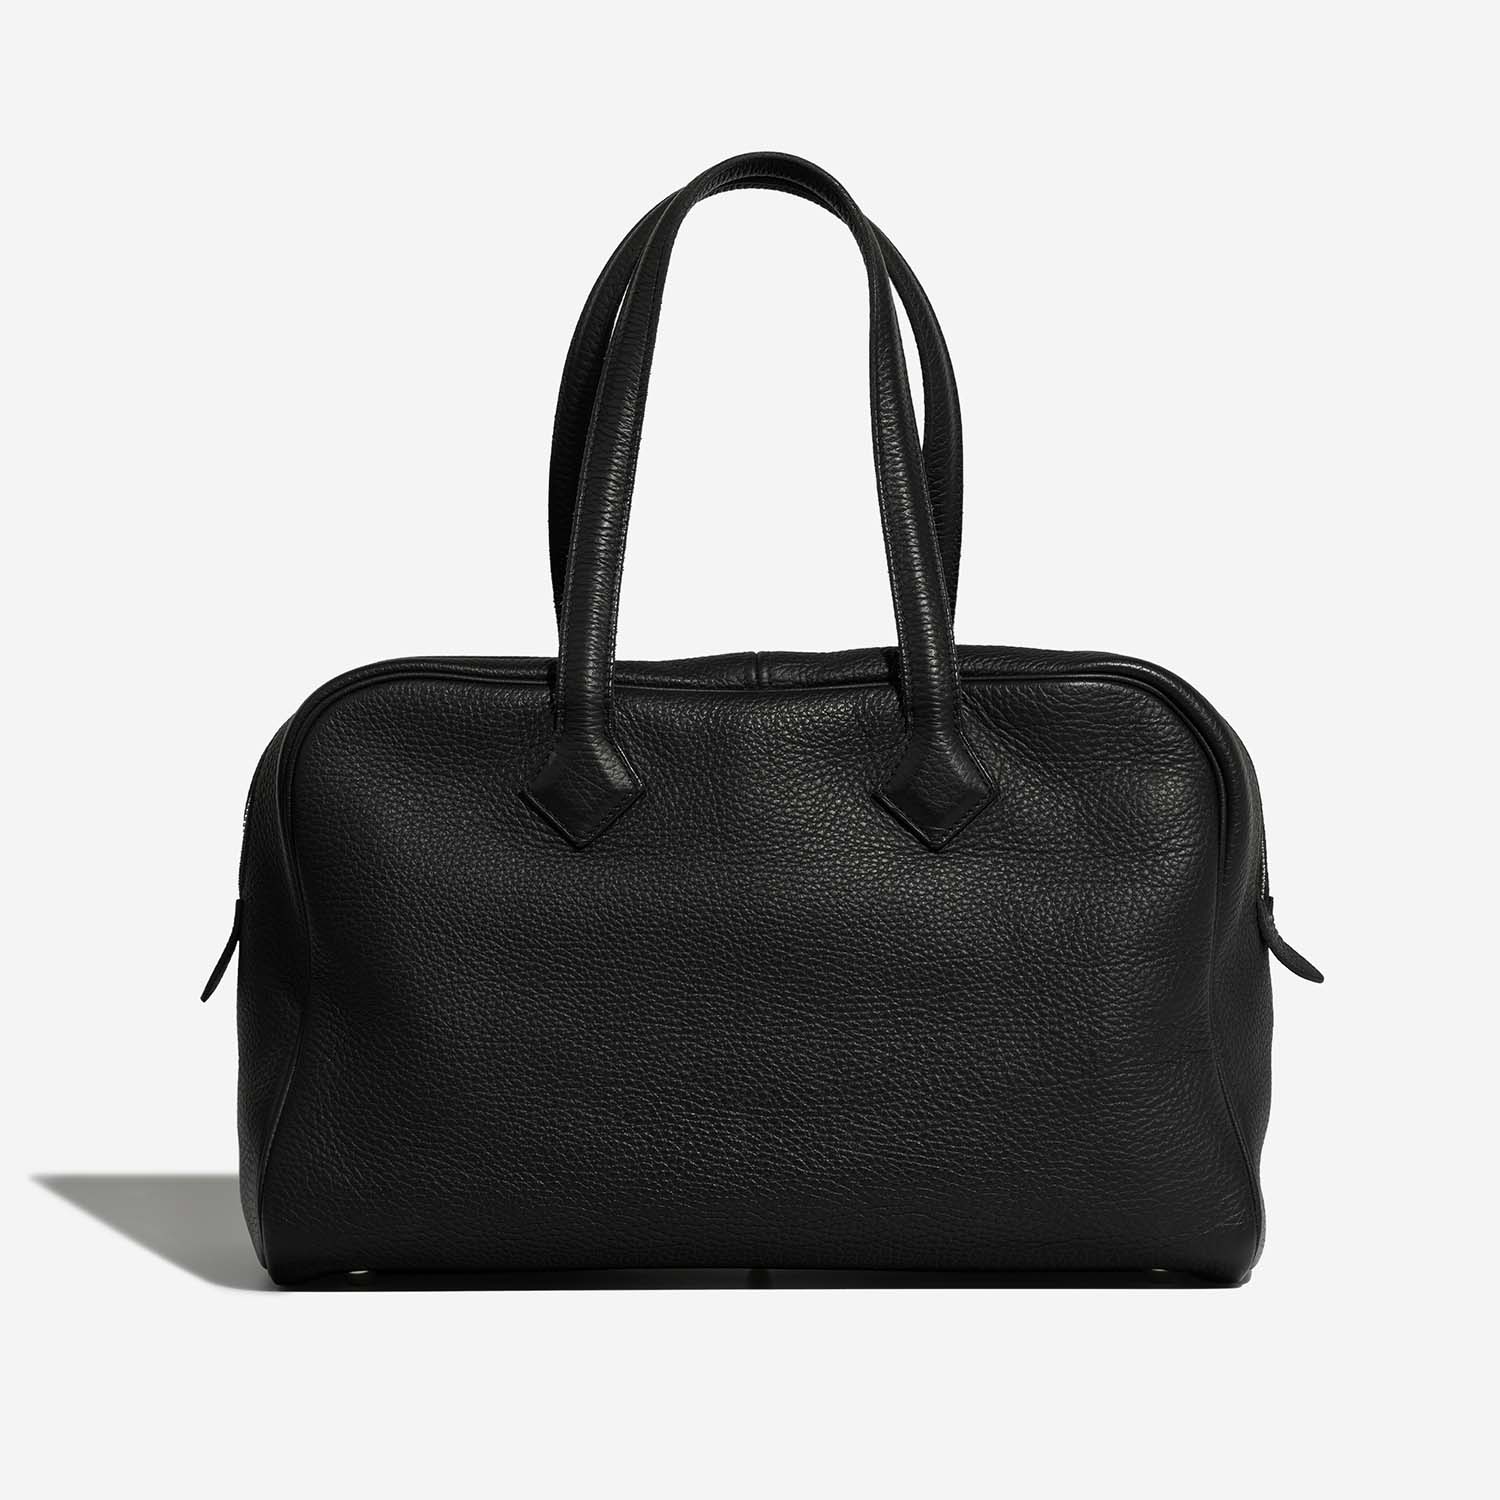 Hermès Victoria 35 Black Back | Verkaufen Sie Ihre Designer-Tasche auf Saclab.com